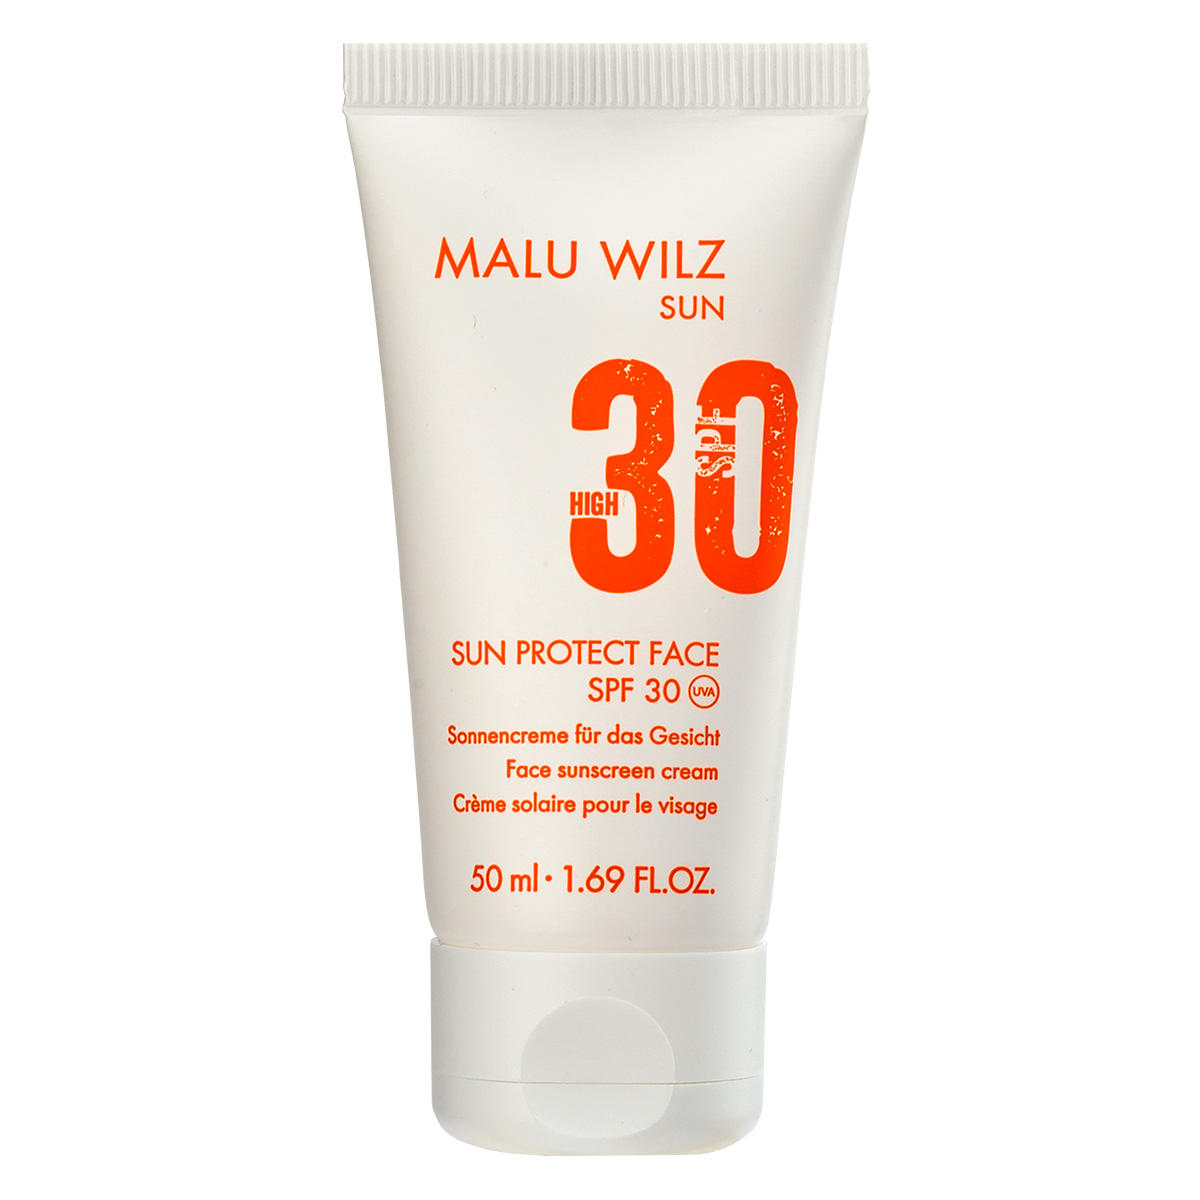 Malu Wilz Sun Crème solaire pour le visage SPF 30 50 ml - 1